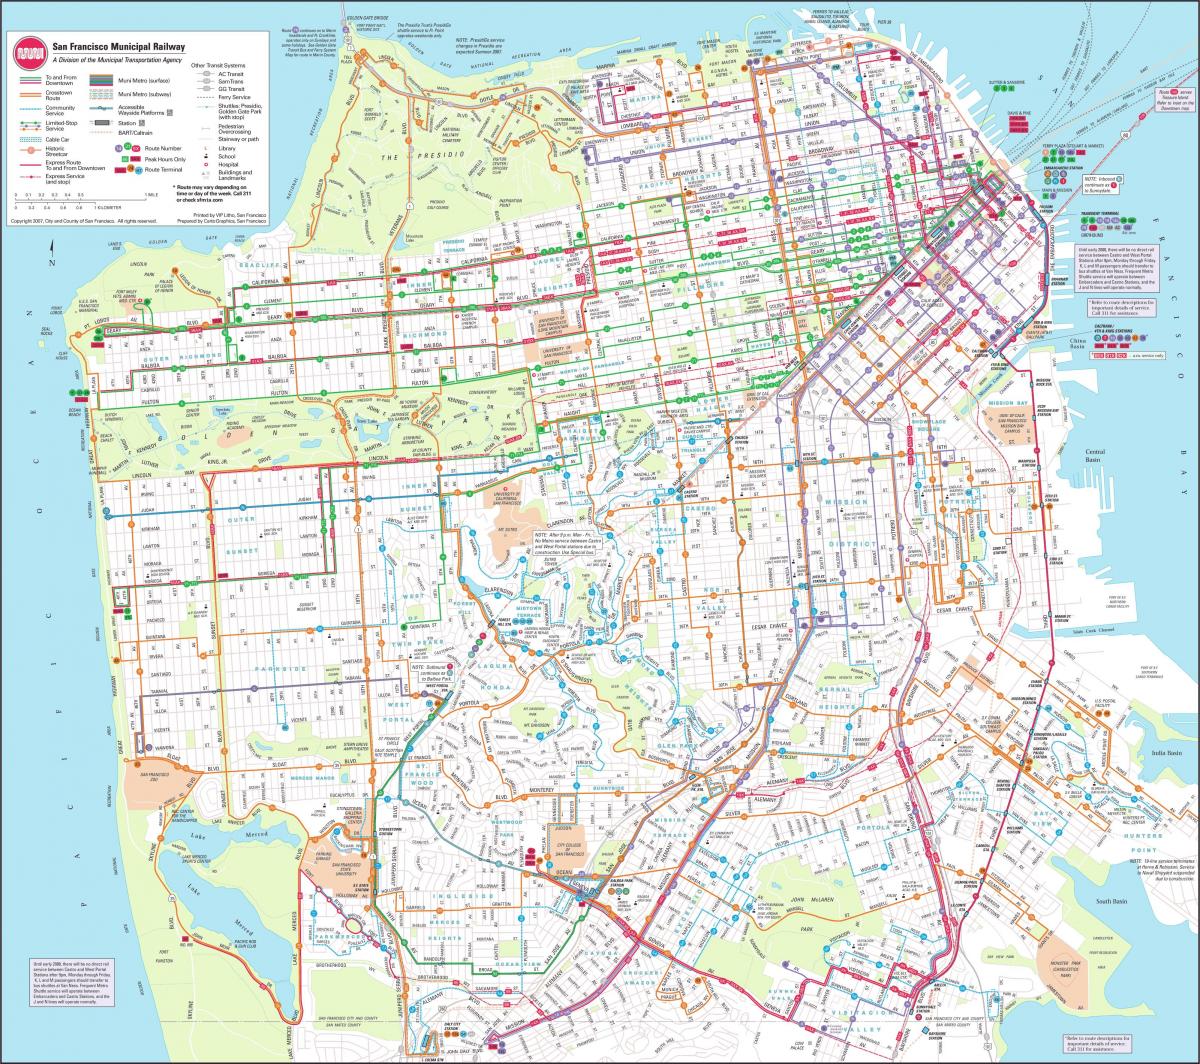 Peta dari San Francisco municipal railway